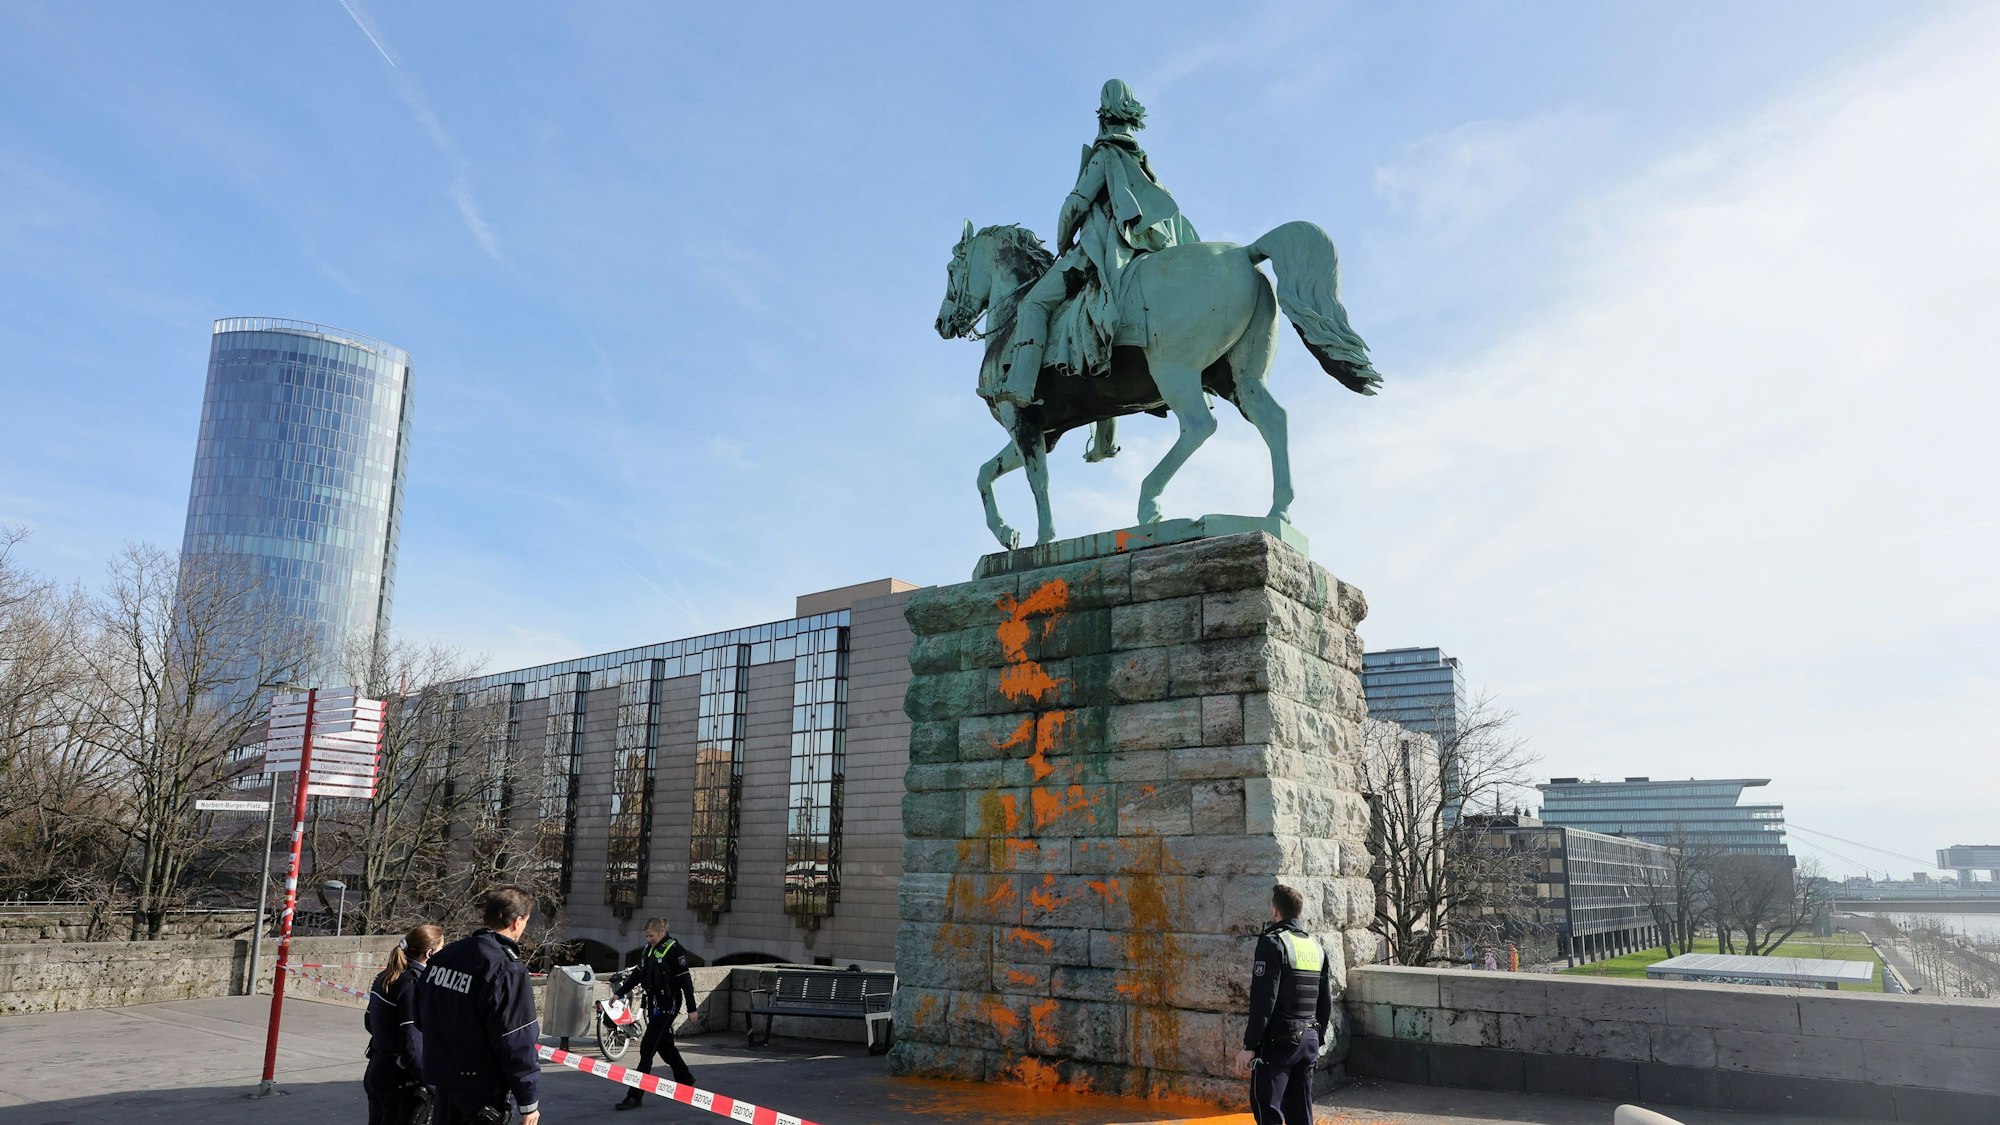 Aktivisten haben orangene Farbe auf ein Reiterdenkmal am Deutzer Rheinufer gekippt.

